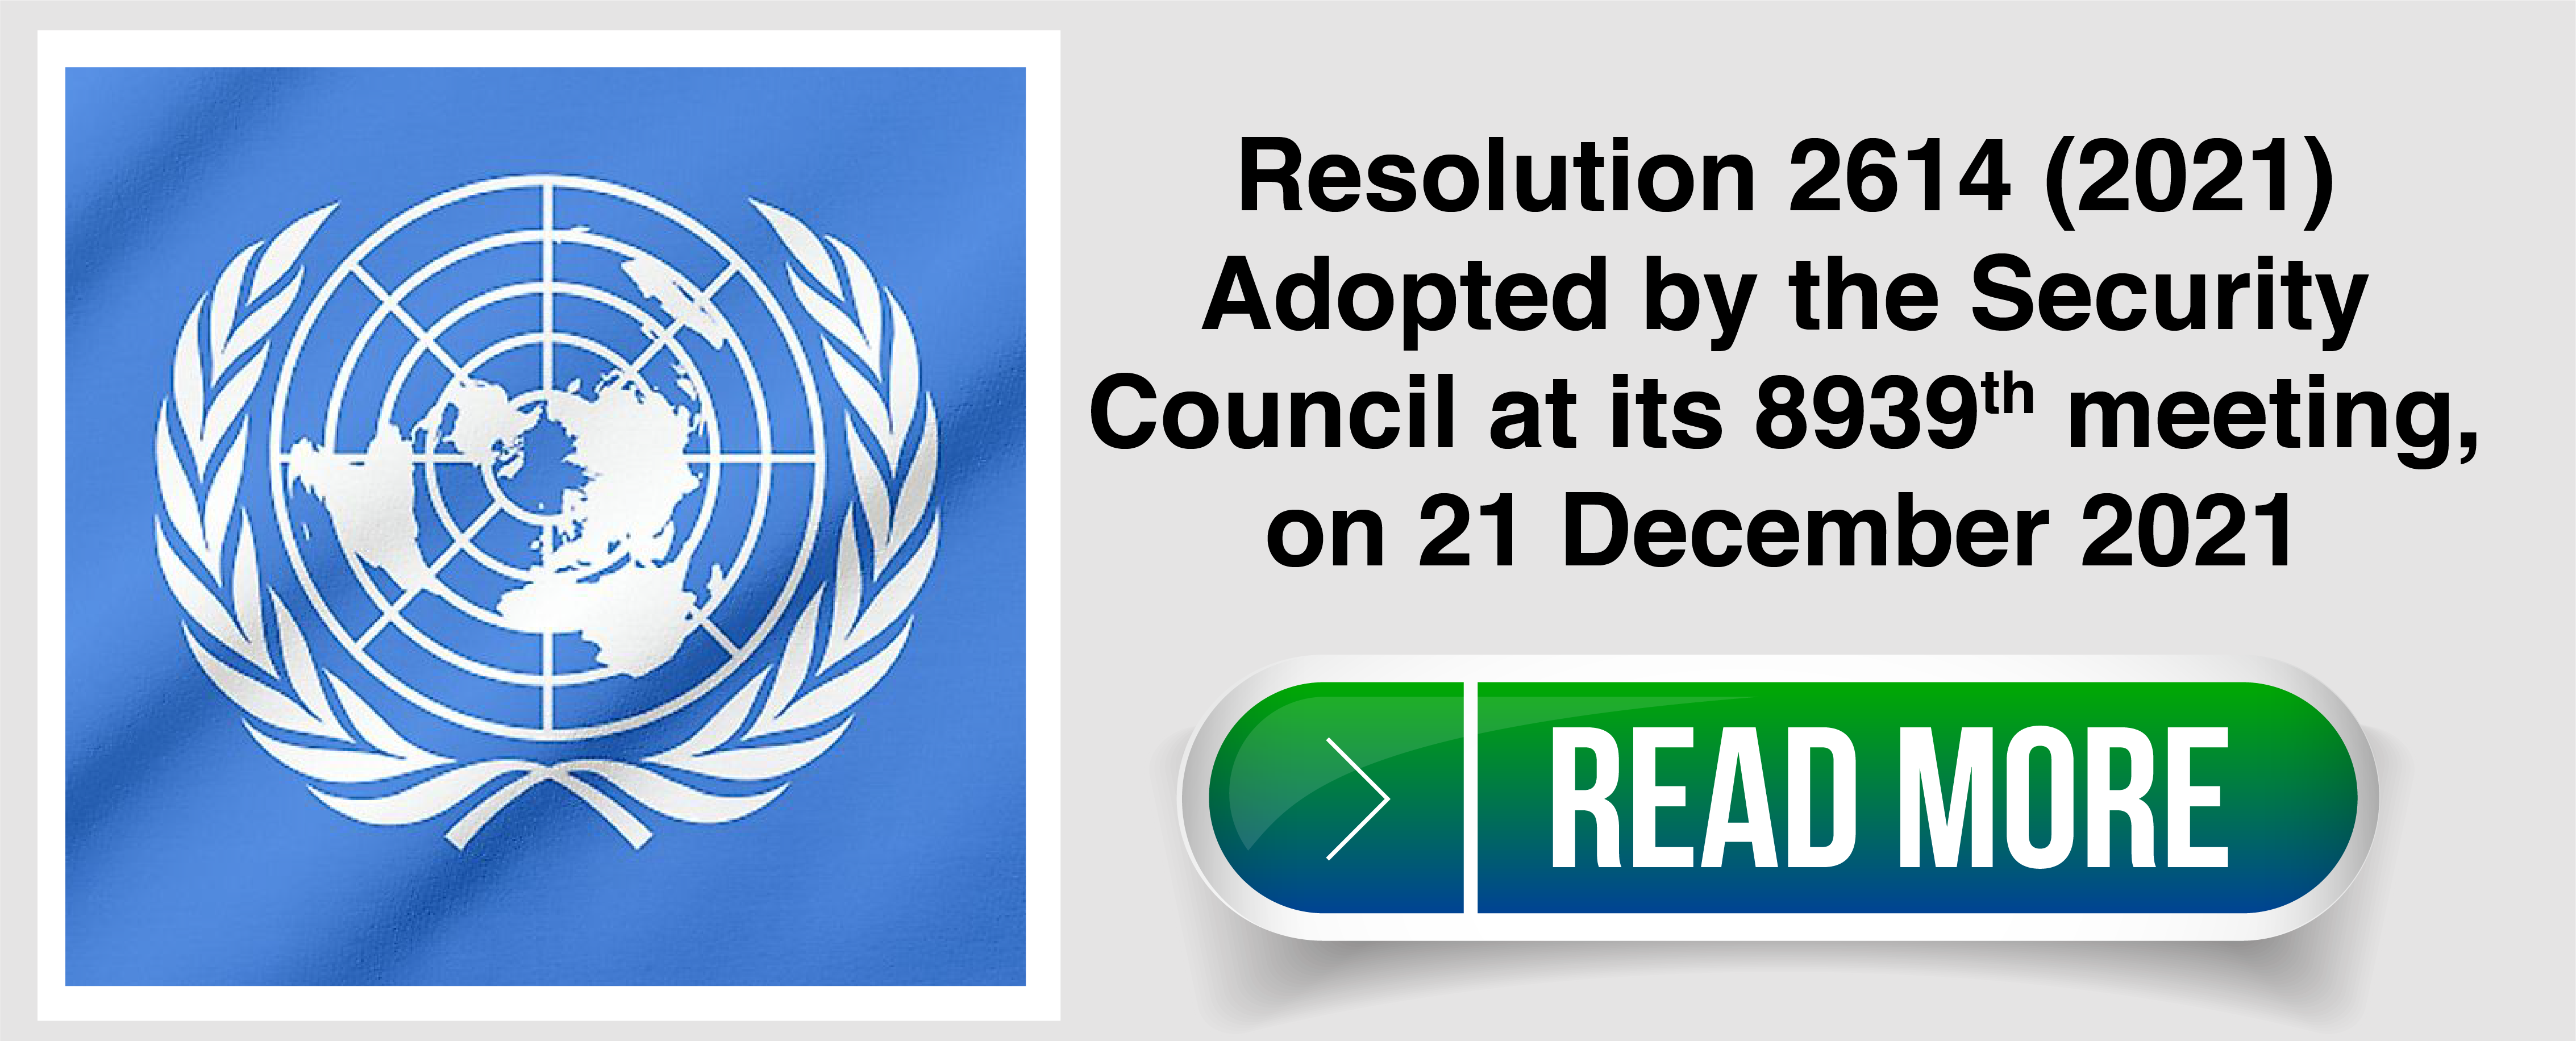 Resolution 2614 (2021)